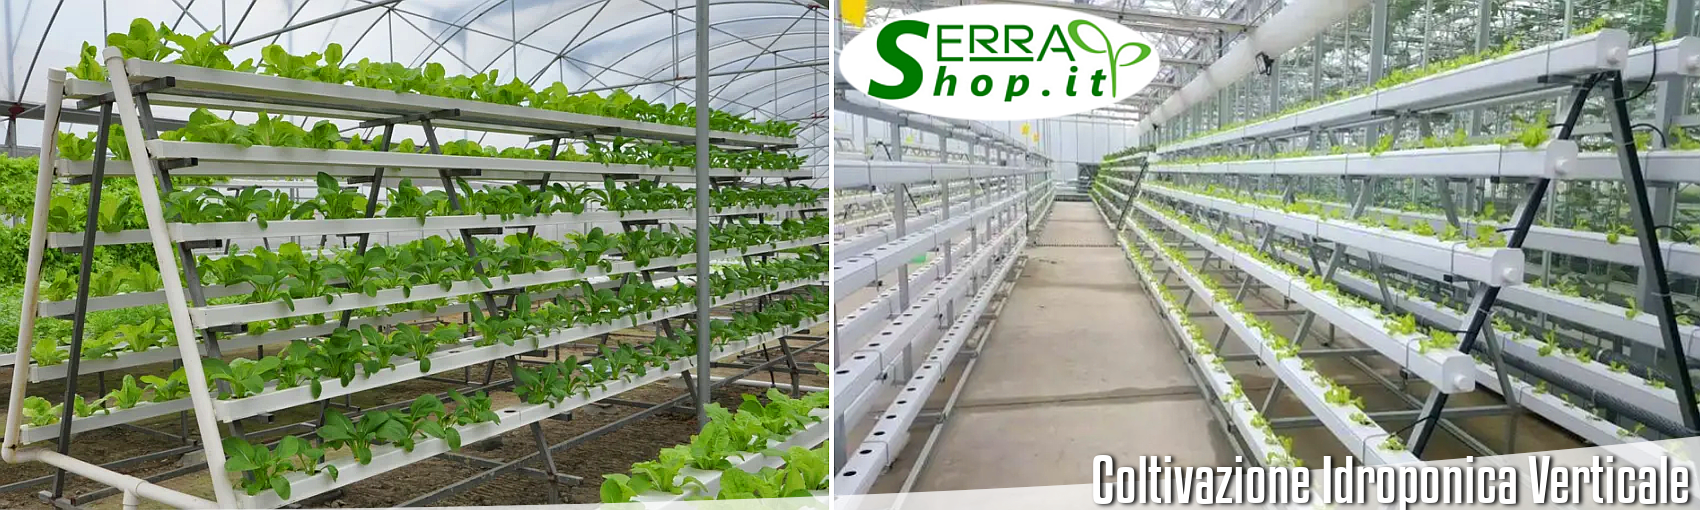 serrashop attrezzatura idroponica aeroponica sistema nft orto verticale coltivazione 9